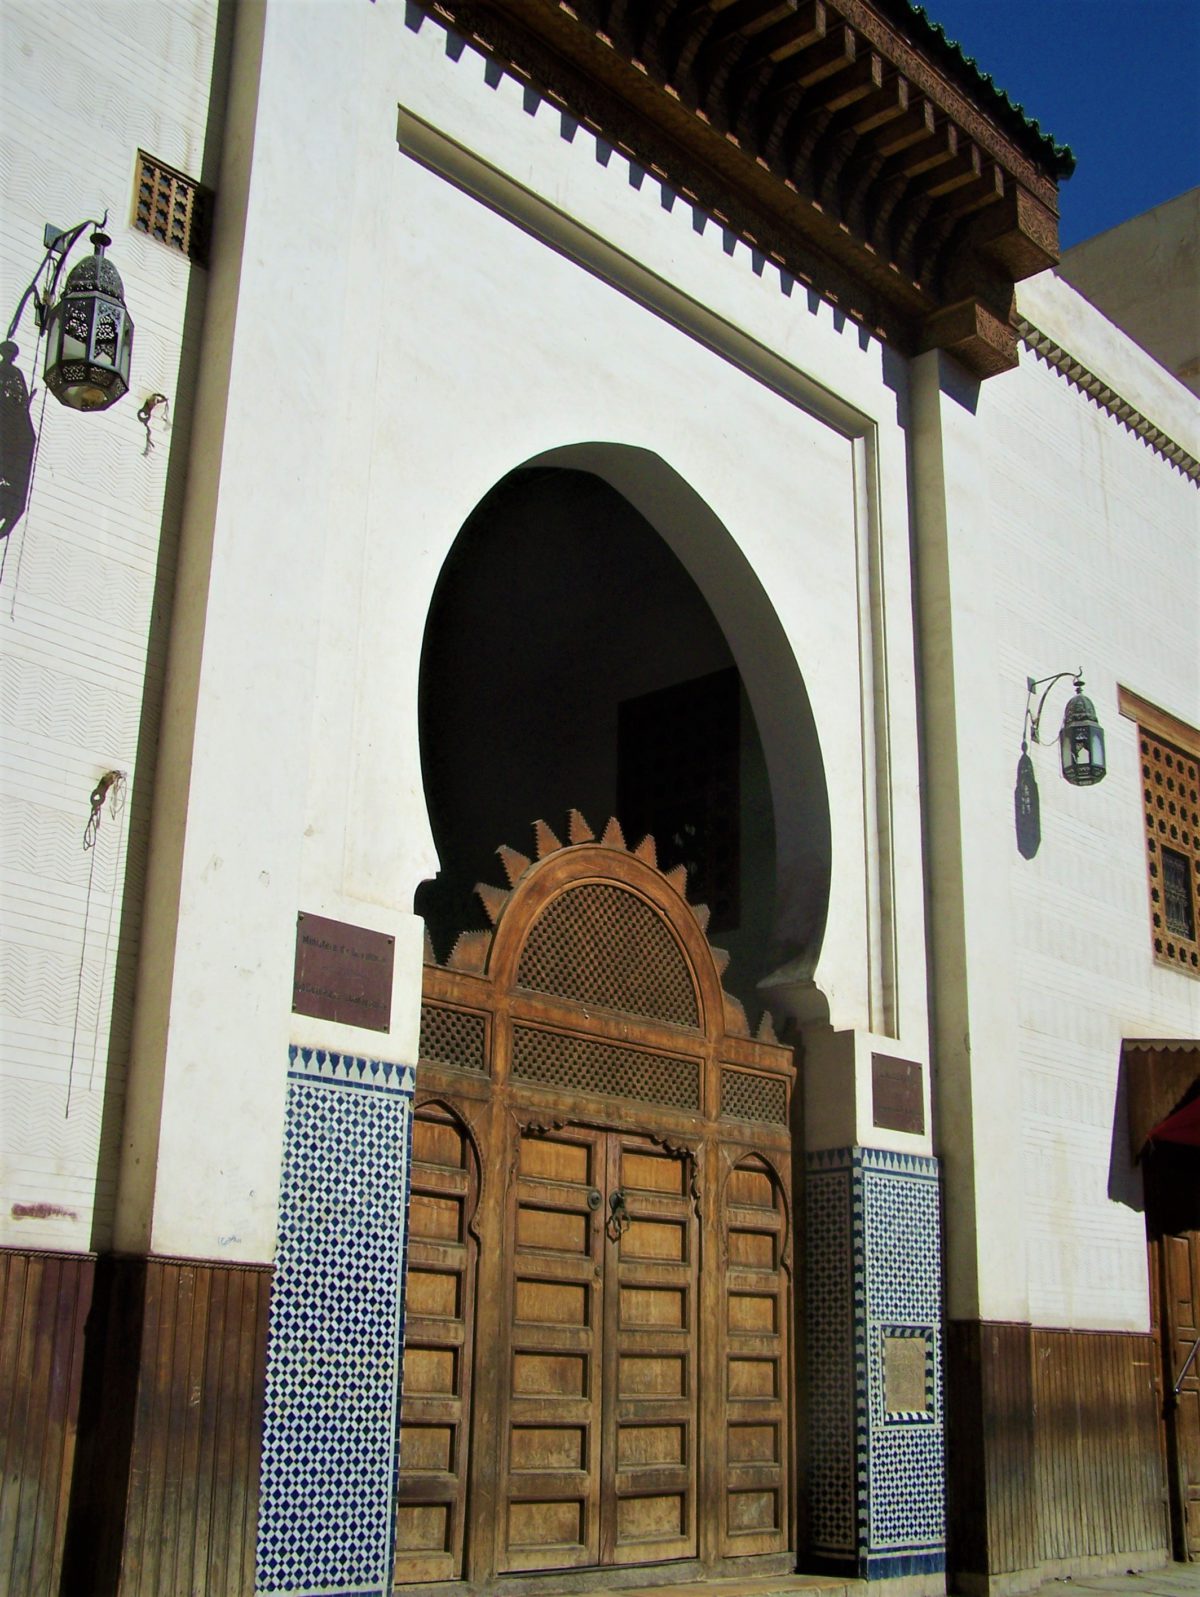 Łuki w kształcie podkowy są wyrazem wpływów mauretańskich w marokańskiej architekturze